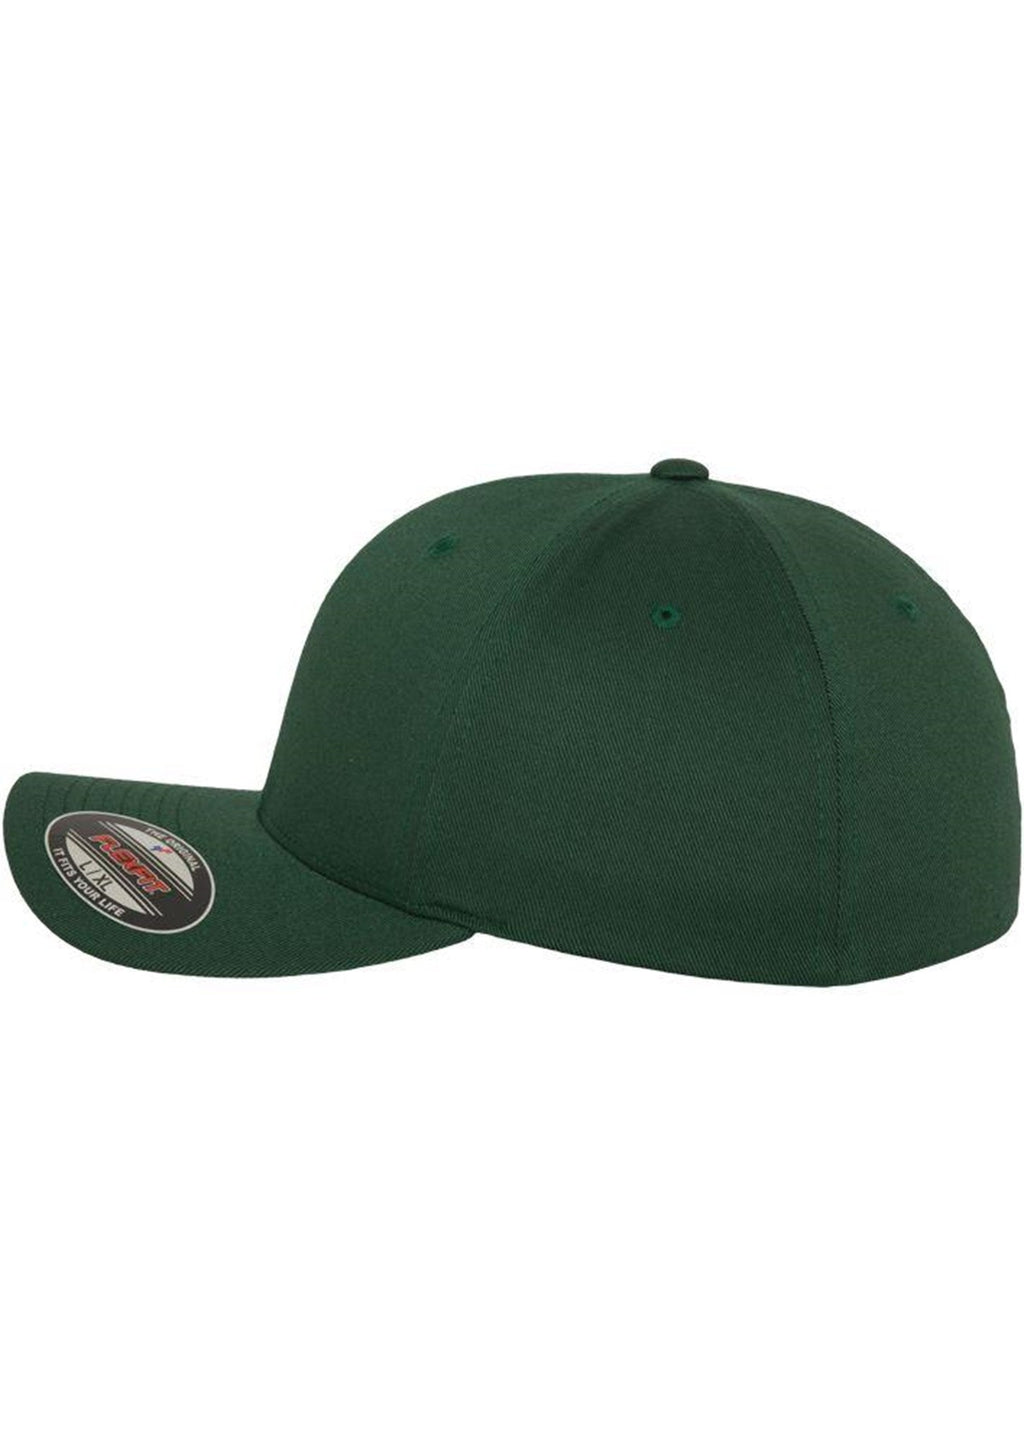 Flexfit Original Baseballmütze - dunkelgrün